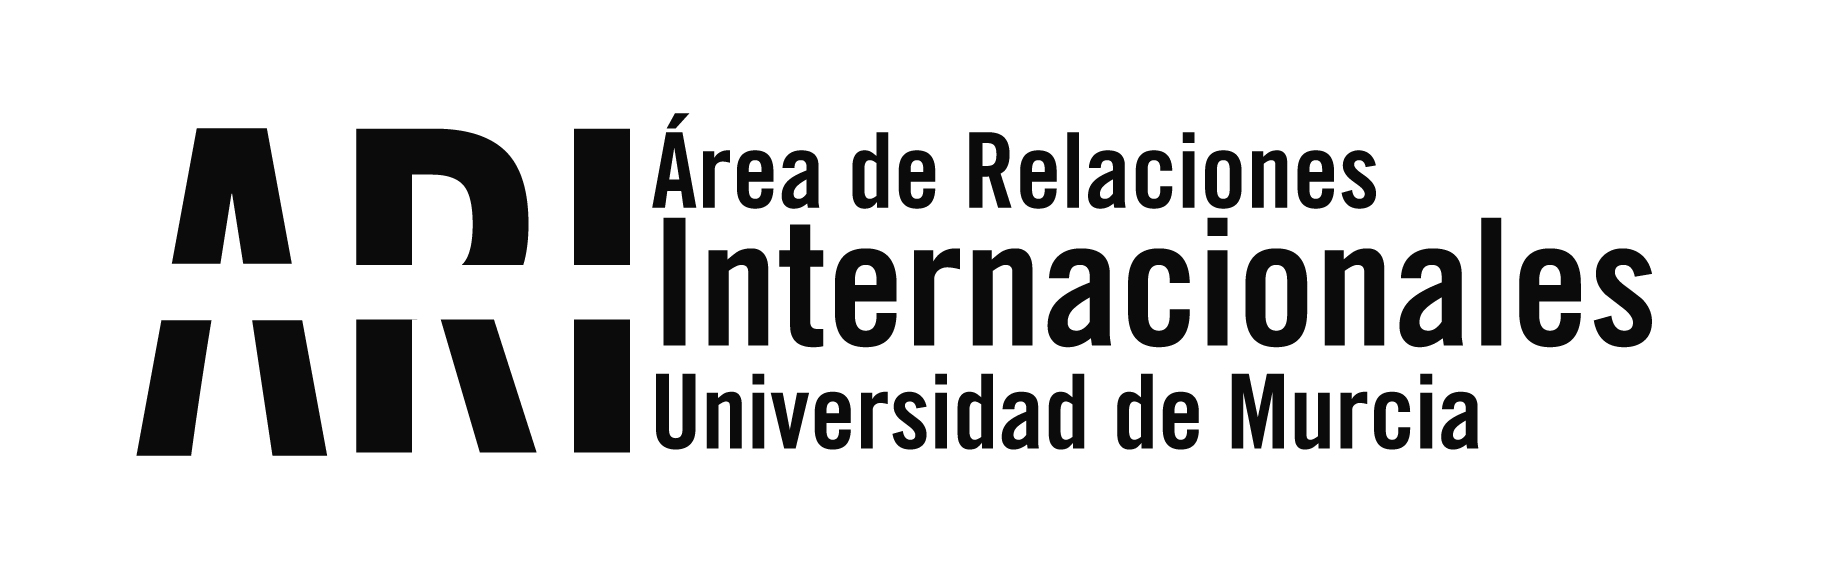 La Universidad de Murcia participa en la Feria Internacional de la Educación Superior en Argentina - Área de Relaciones Internacionales